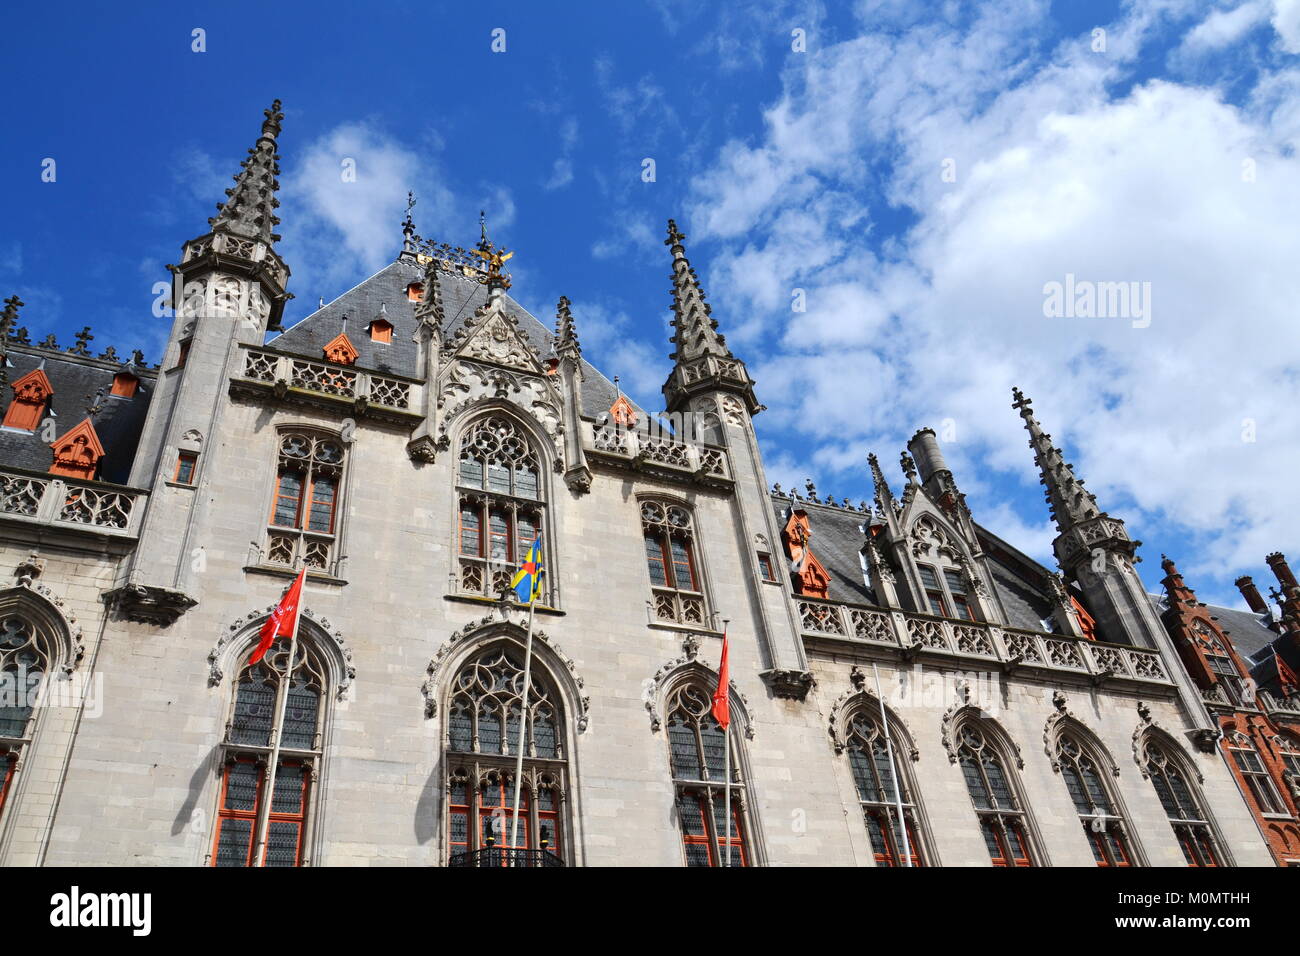 Provinciaal Hof - Province Cour sur place du marché, Bruges, Belgique Banque D'Images